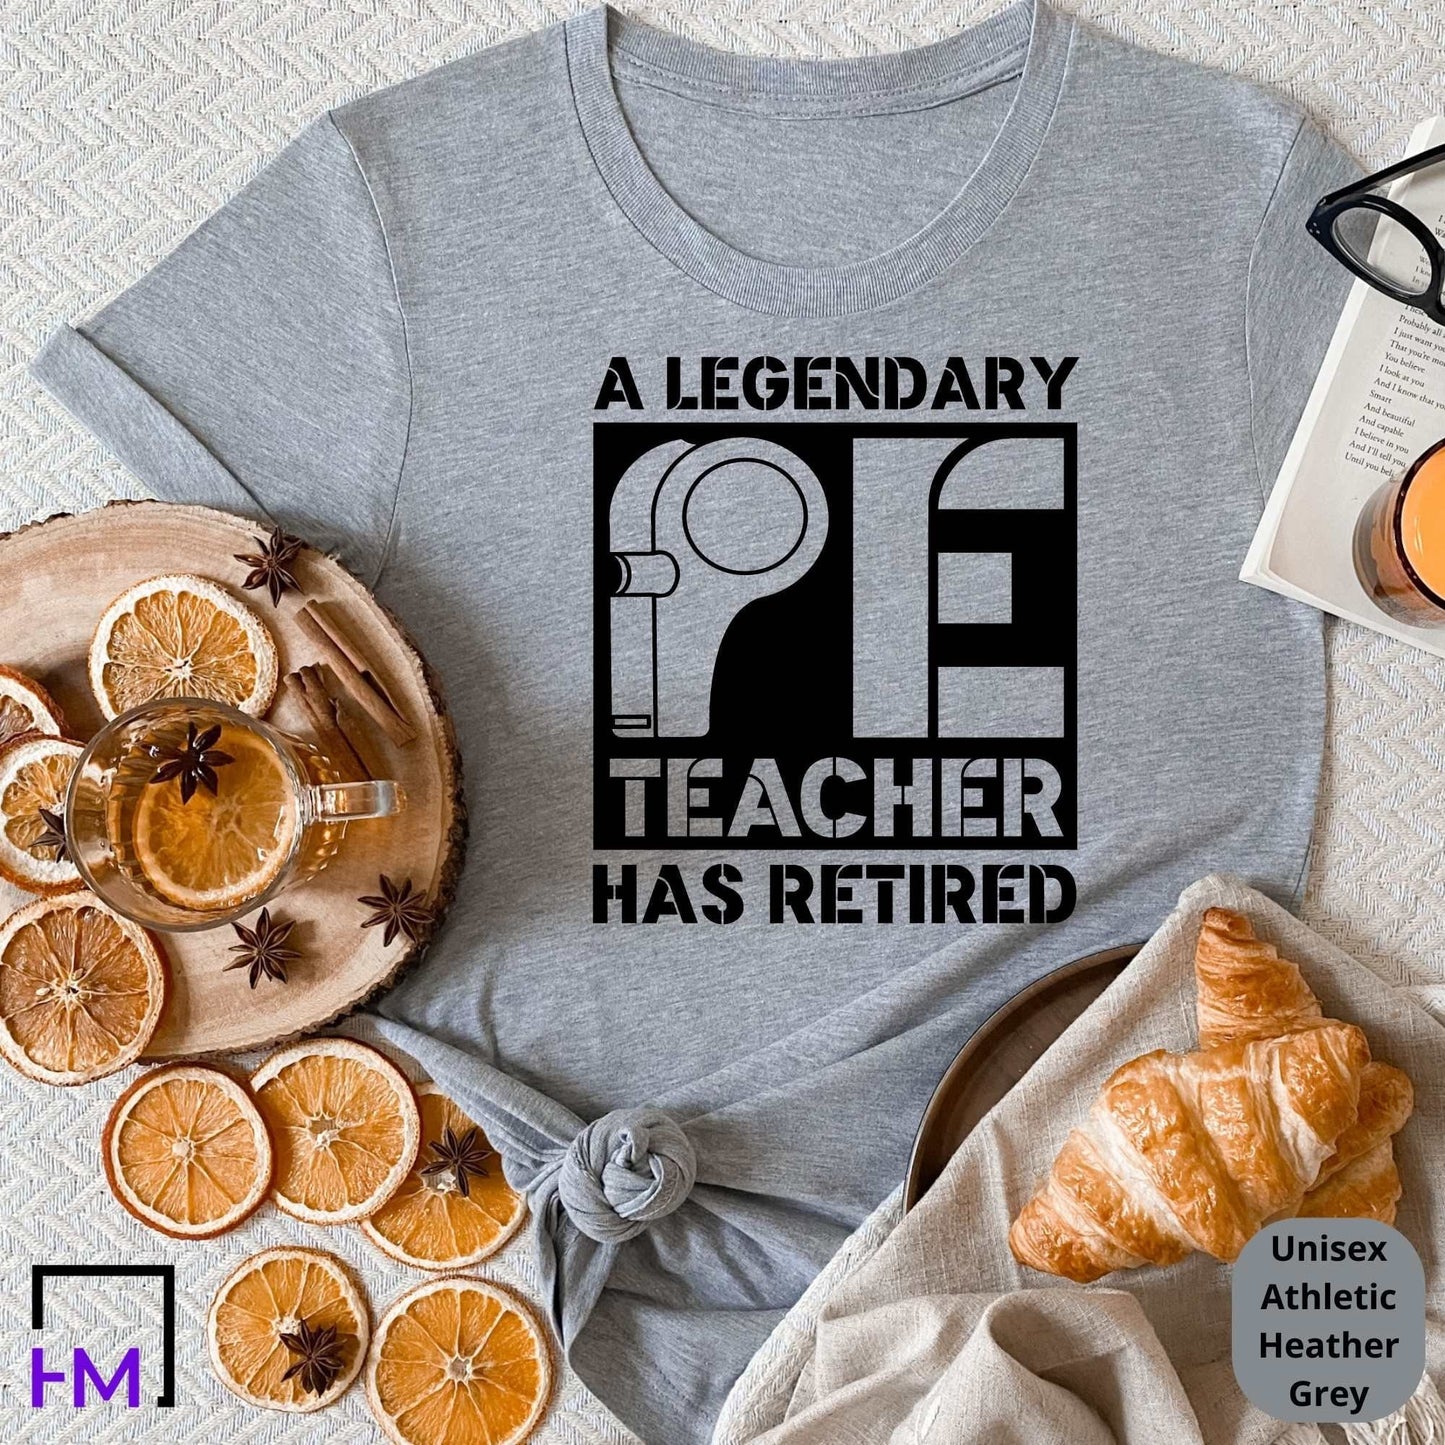 Retired Physical Education Teacher Shirt